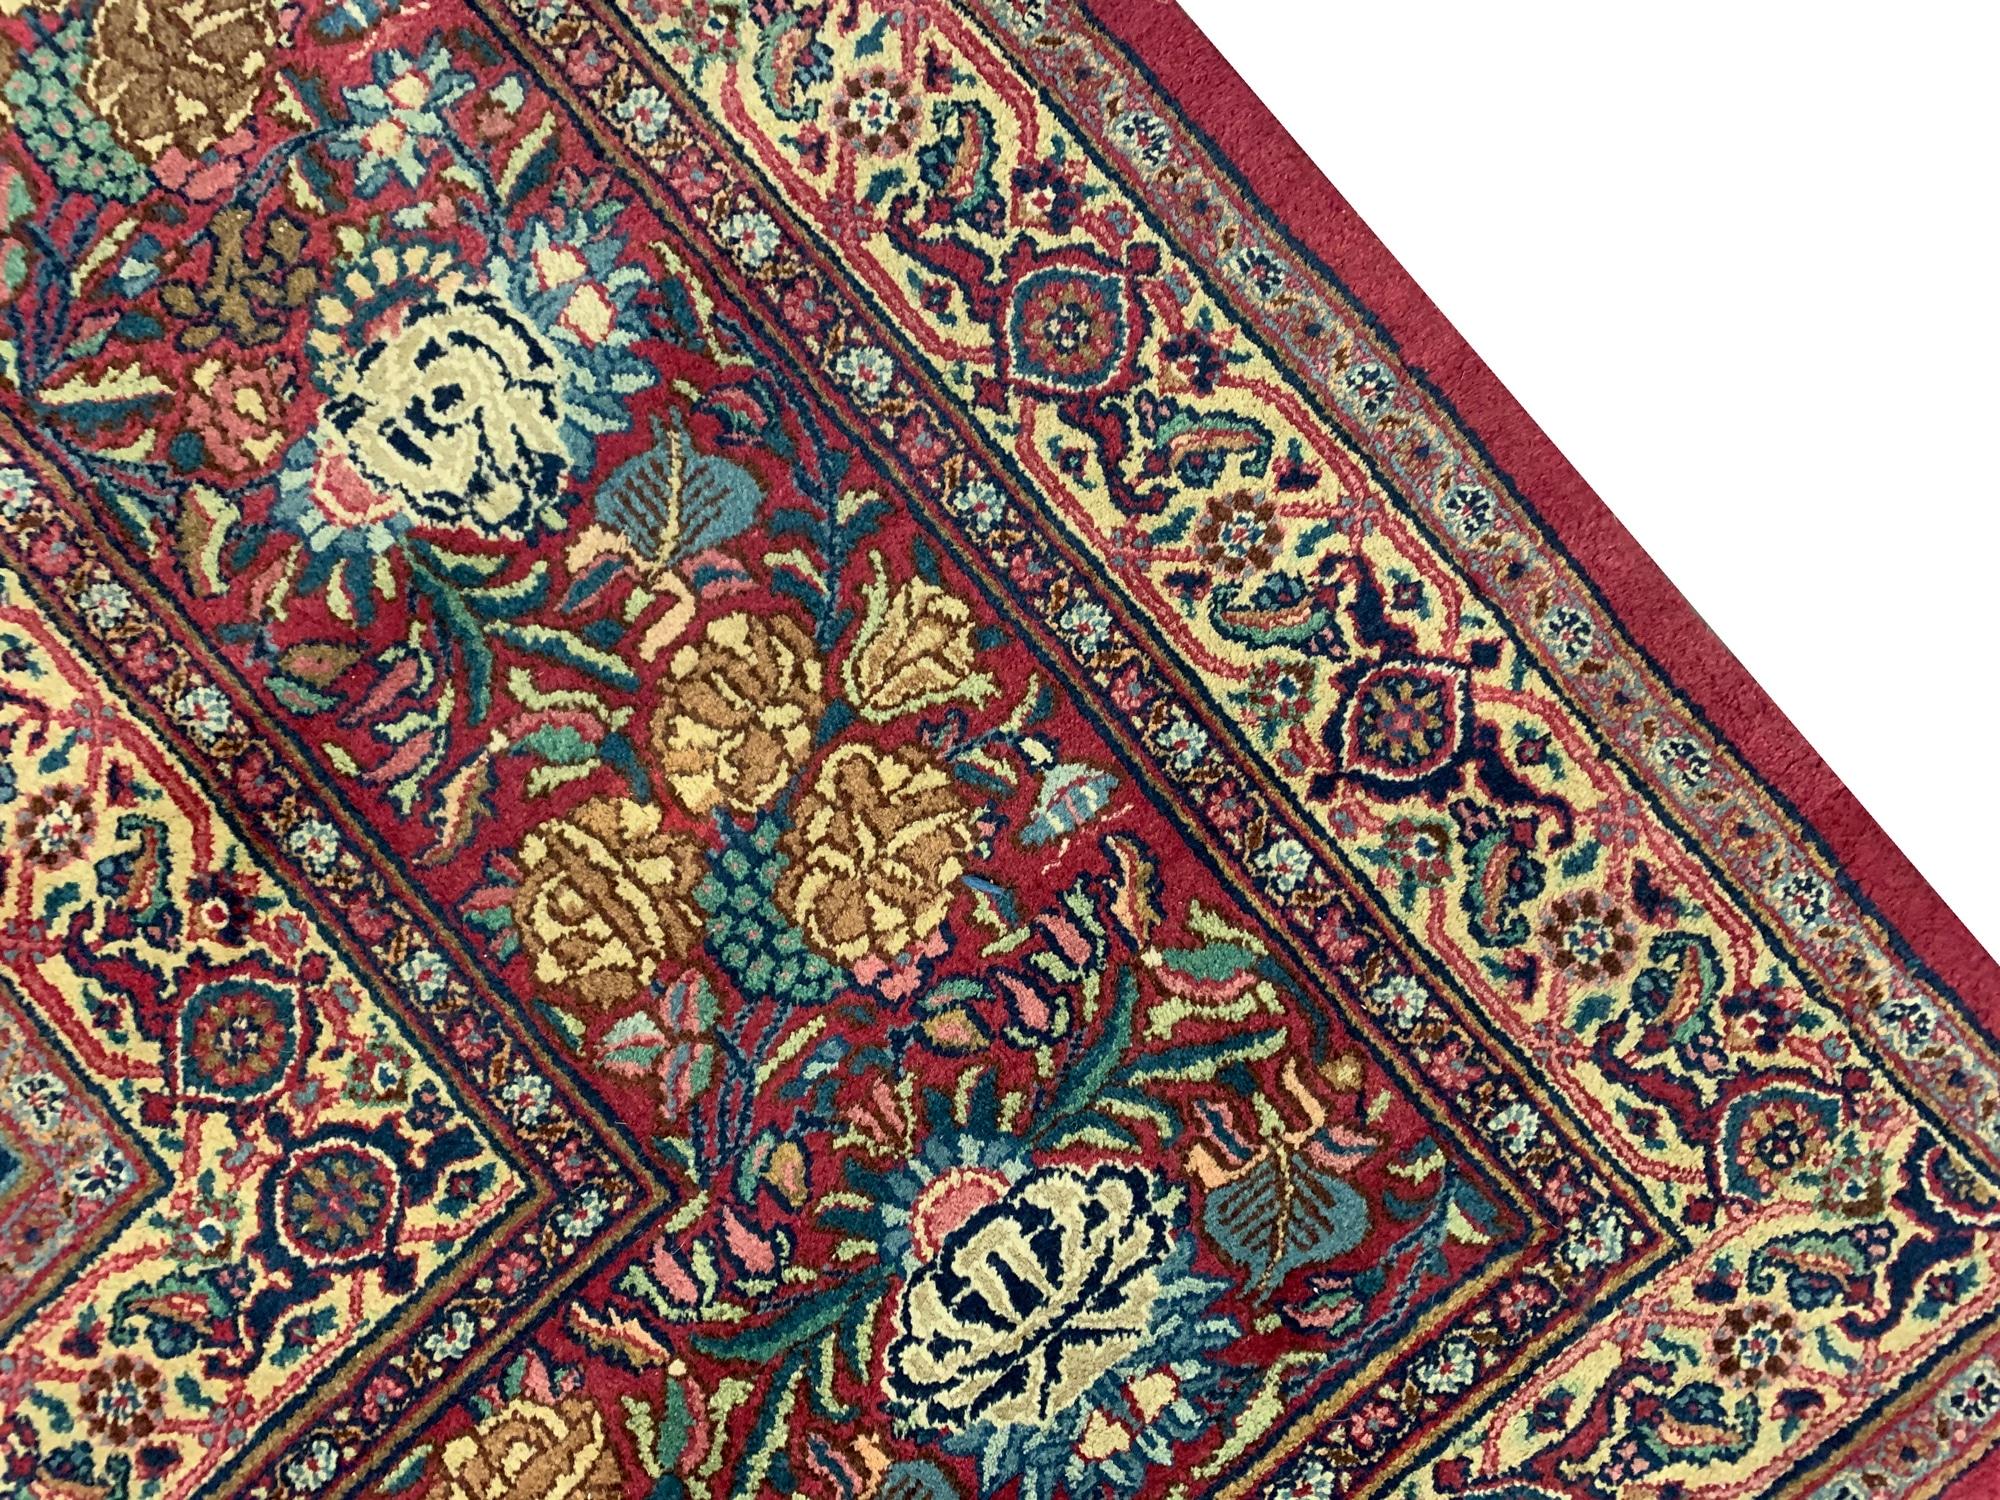 20th Century Oversize Carpet Antique Kerman Rug, Floral All Over Design For Sale